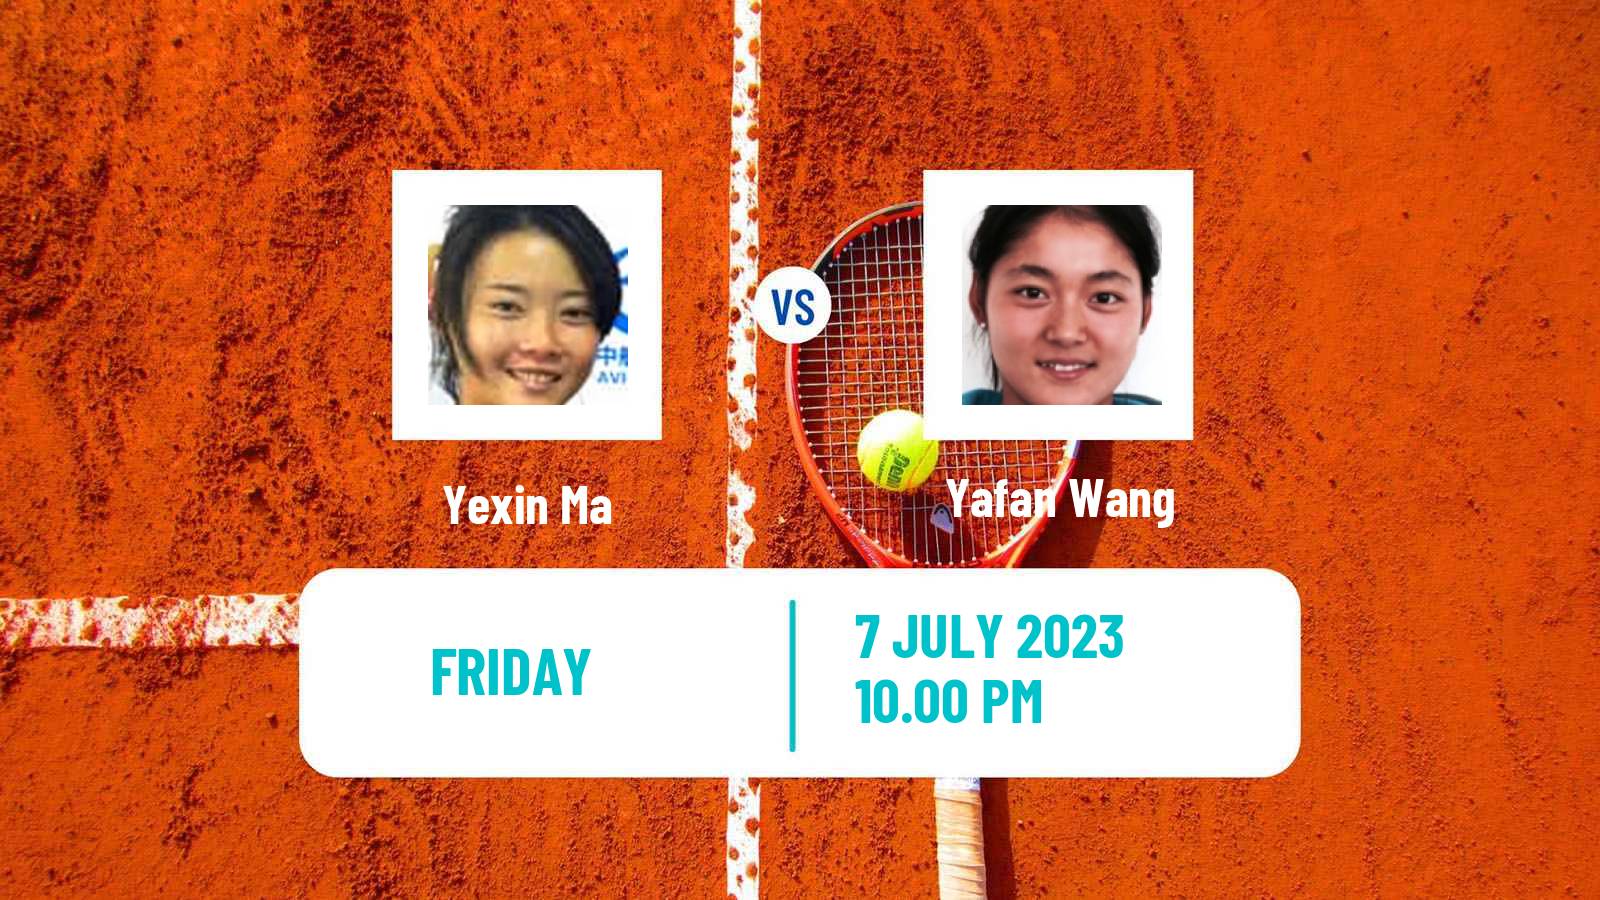 Tennis ITF W40 Hong Kong Women Yexin Ma - Yafan Wang